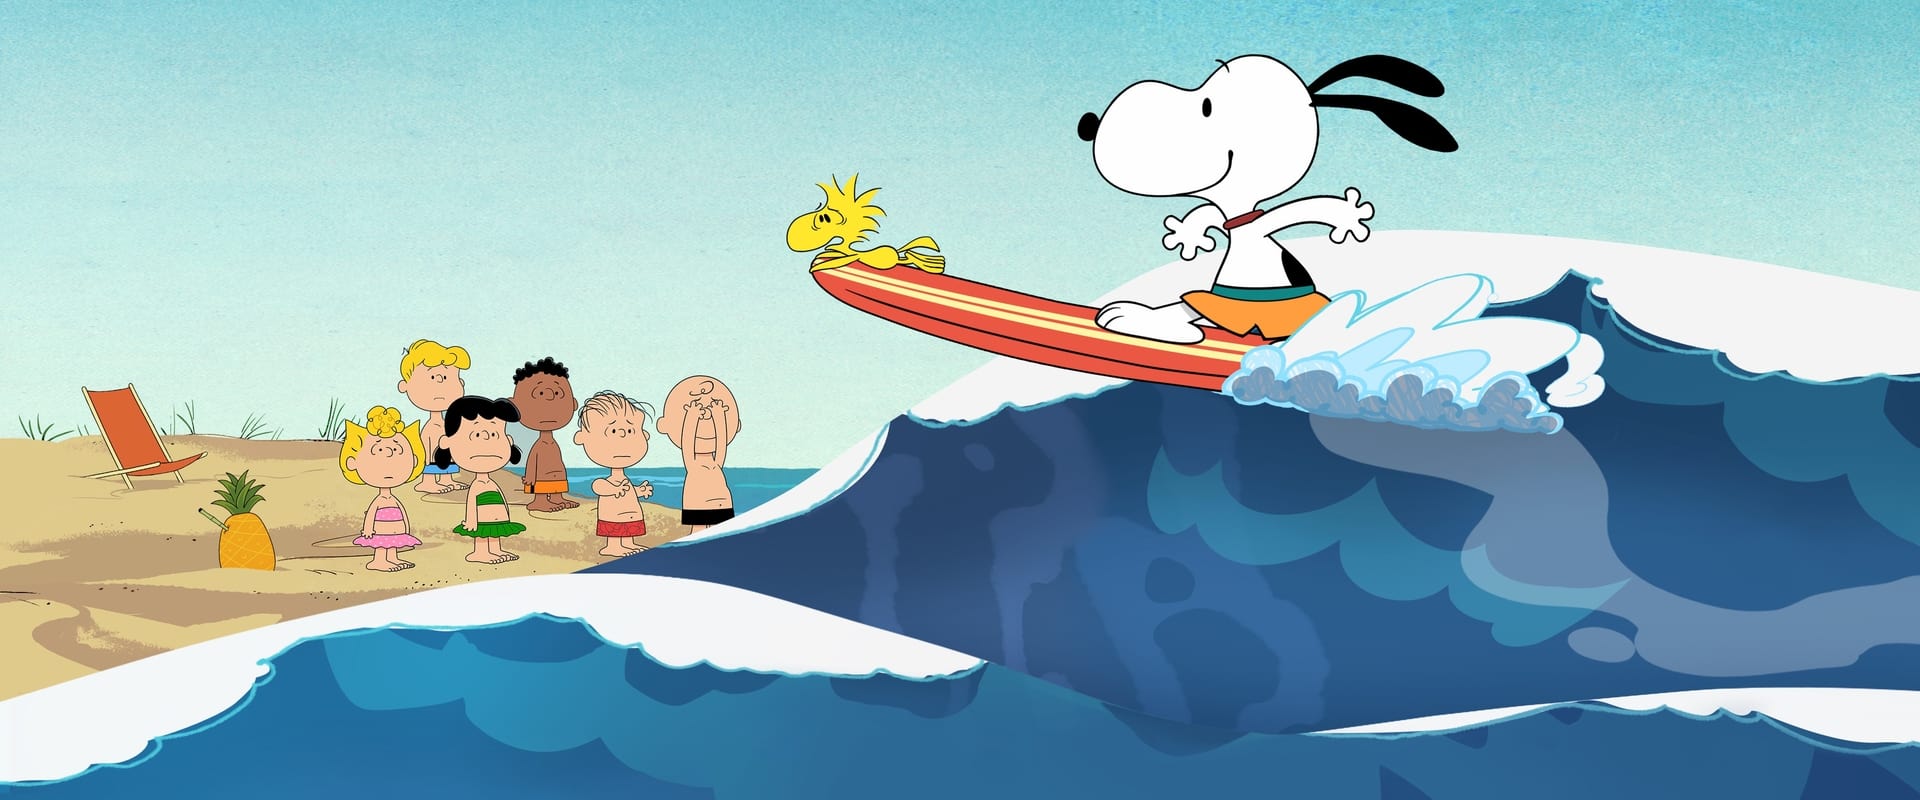 Le avventure di Snoopy